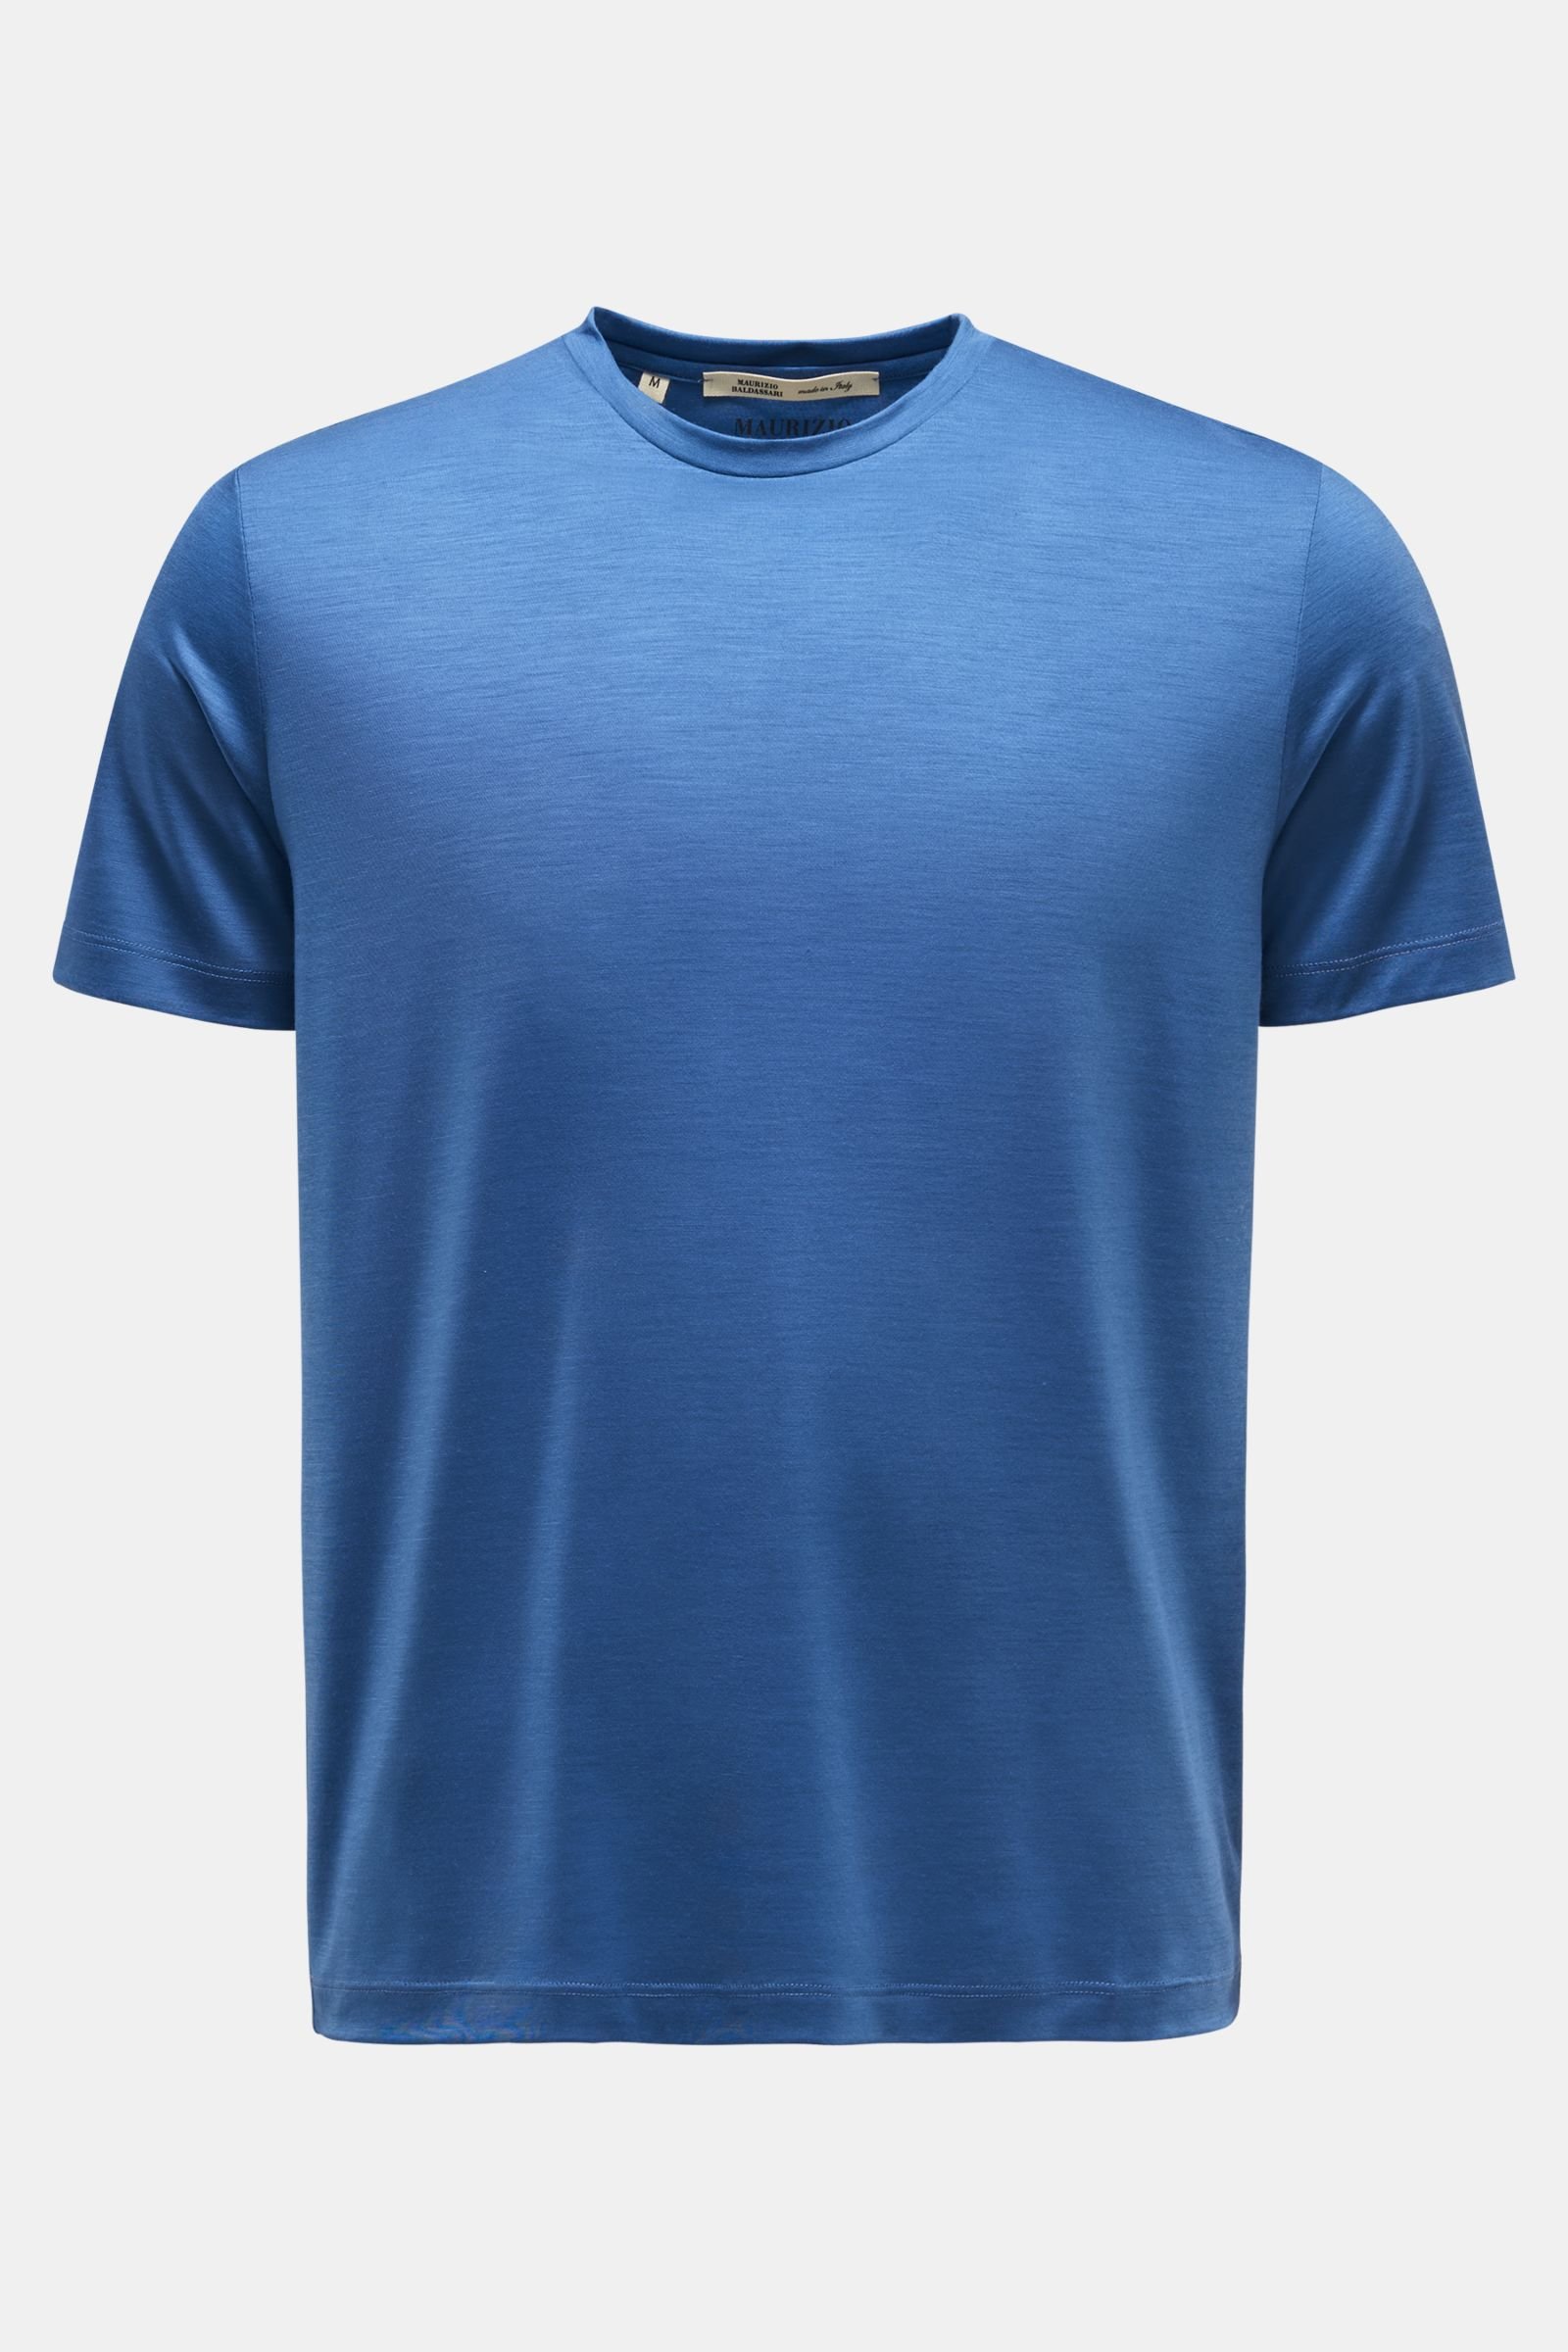 Rundhals-T-Shirt blau